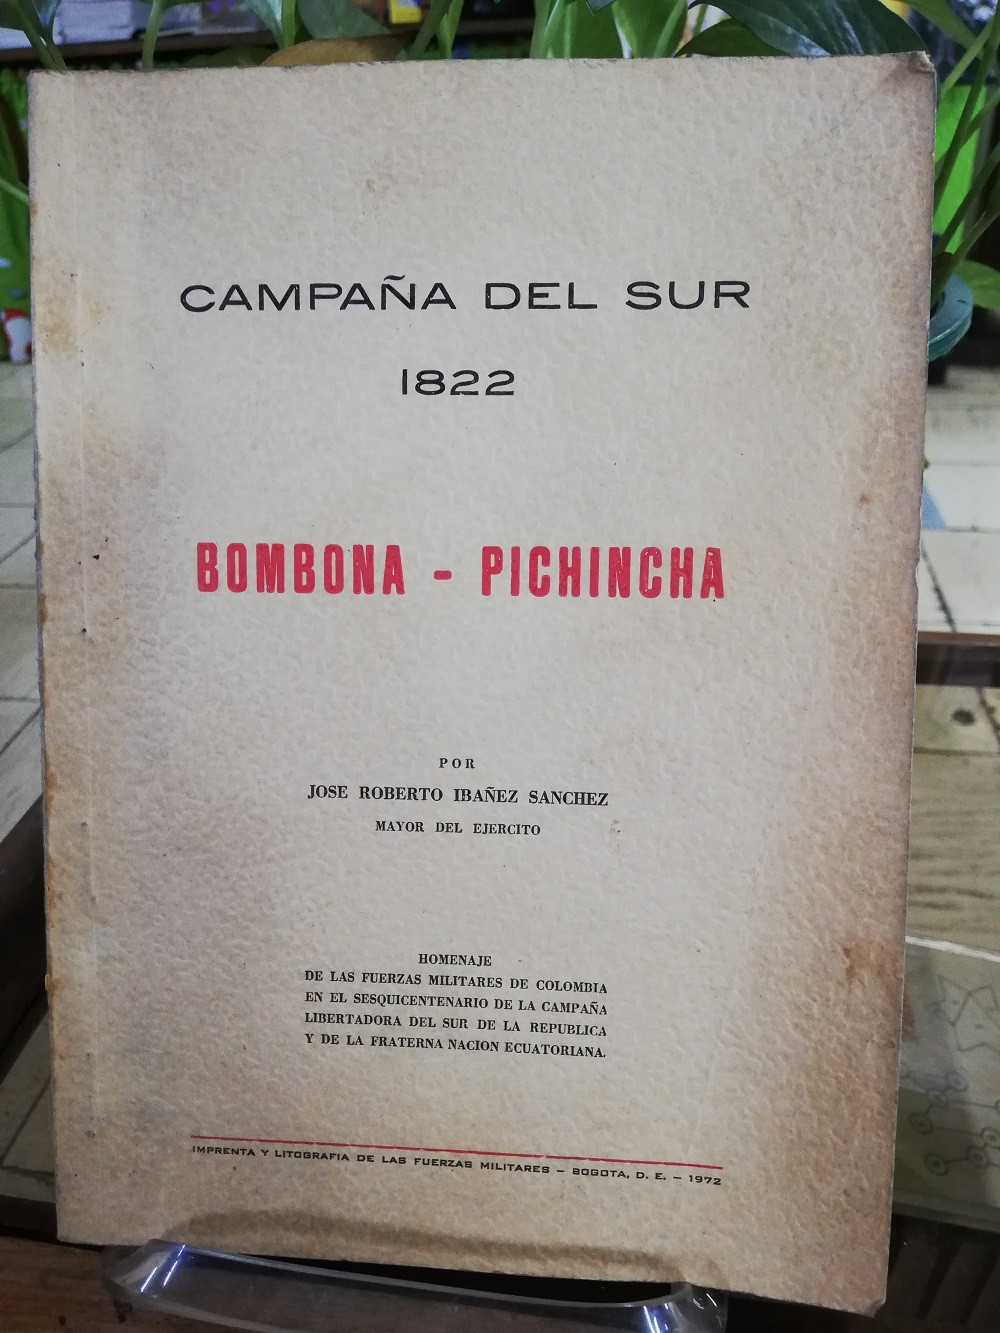 Imagen BOMBONA - PICHINCHA CAMAPAÑA DEL SUR 1822 - JOSÉ ROBERTO IBAÑEZ SANCHEZ 1